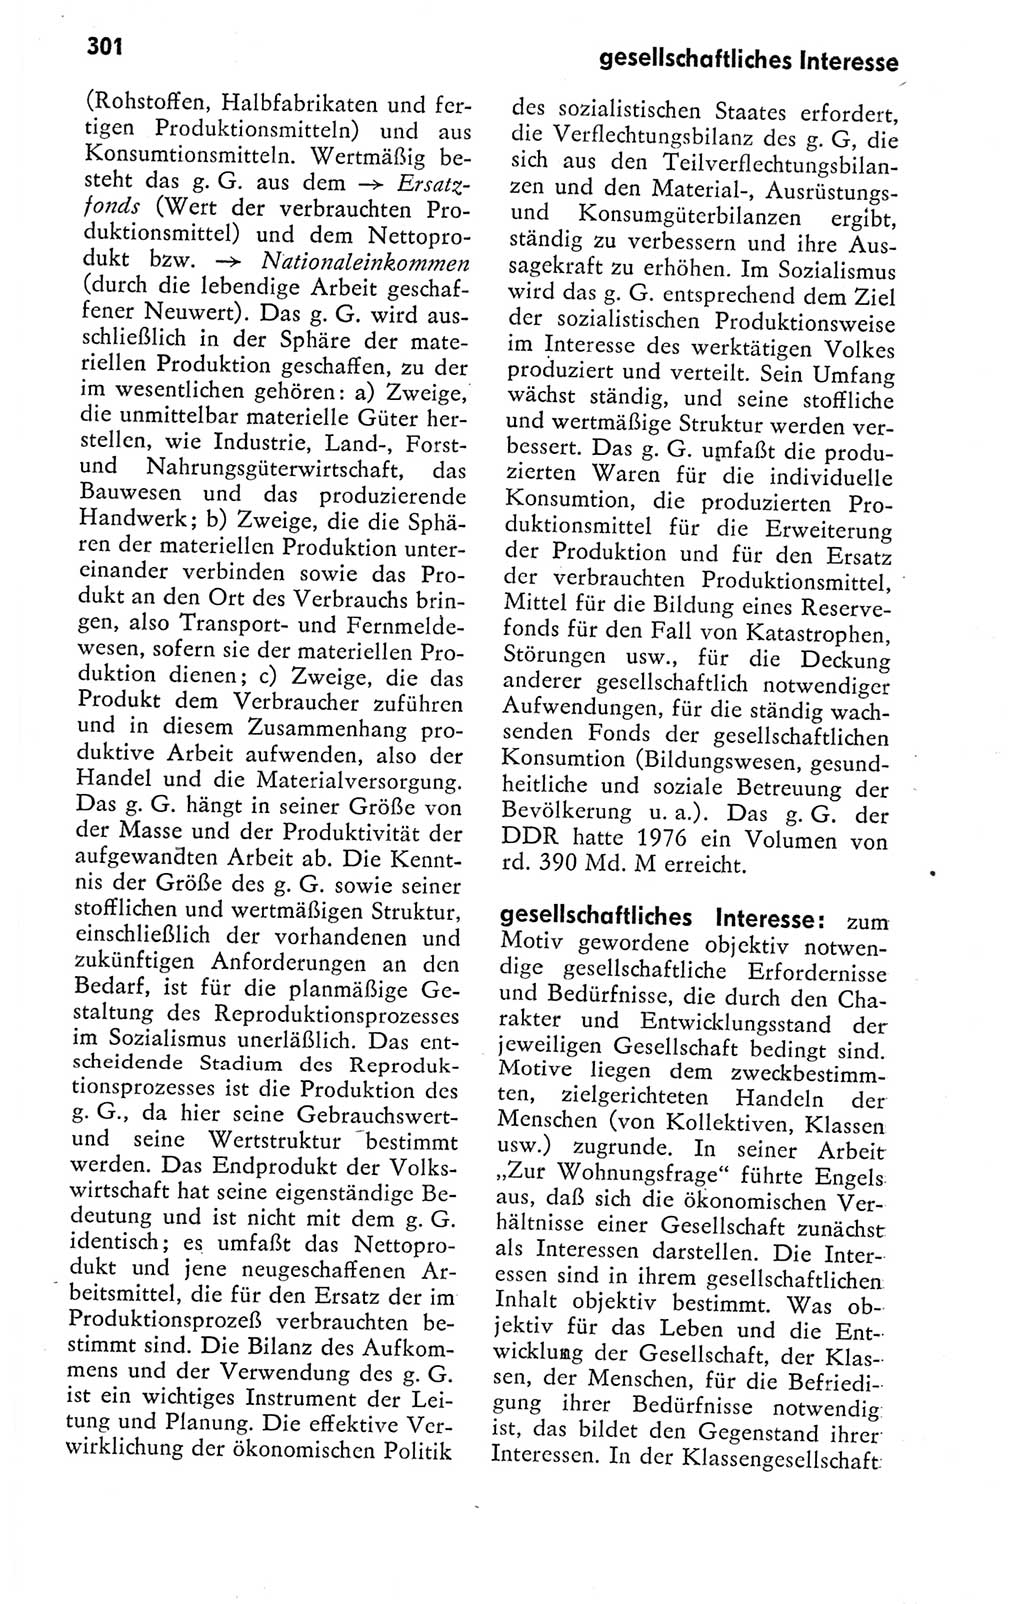 Kleines politisches Wörterbuch [Deutsche Demokratische Republik (DDR)] 1978, Seite 301 (Kl. pol. Wb. DDR 1978, S. 301)